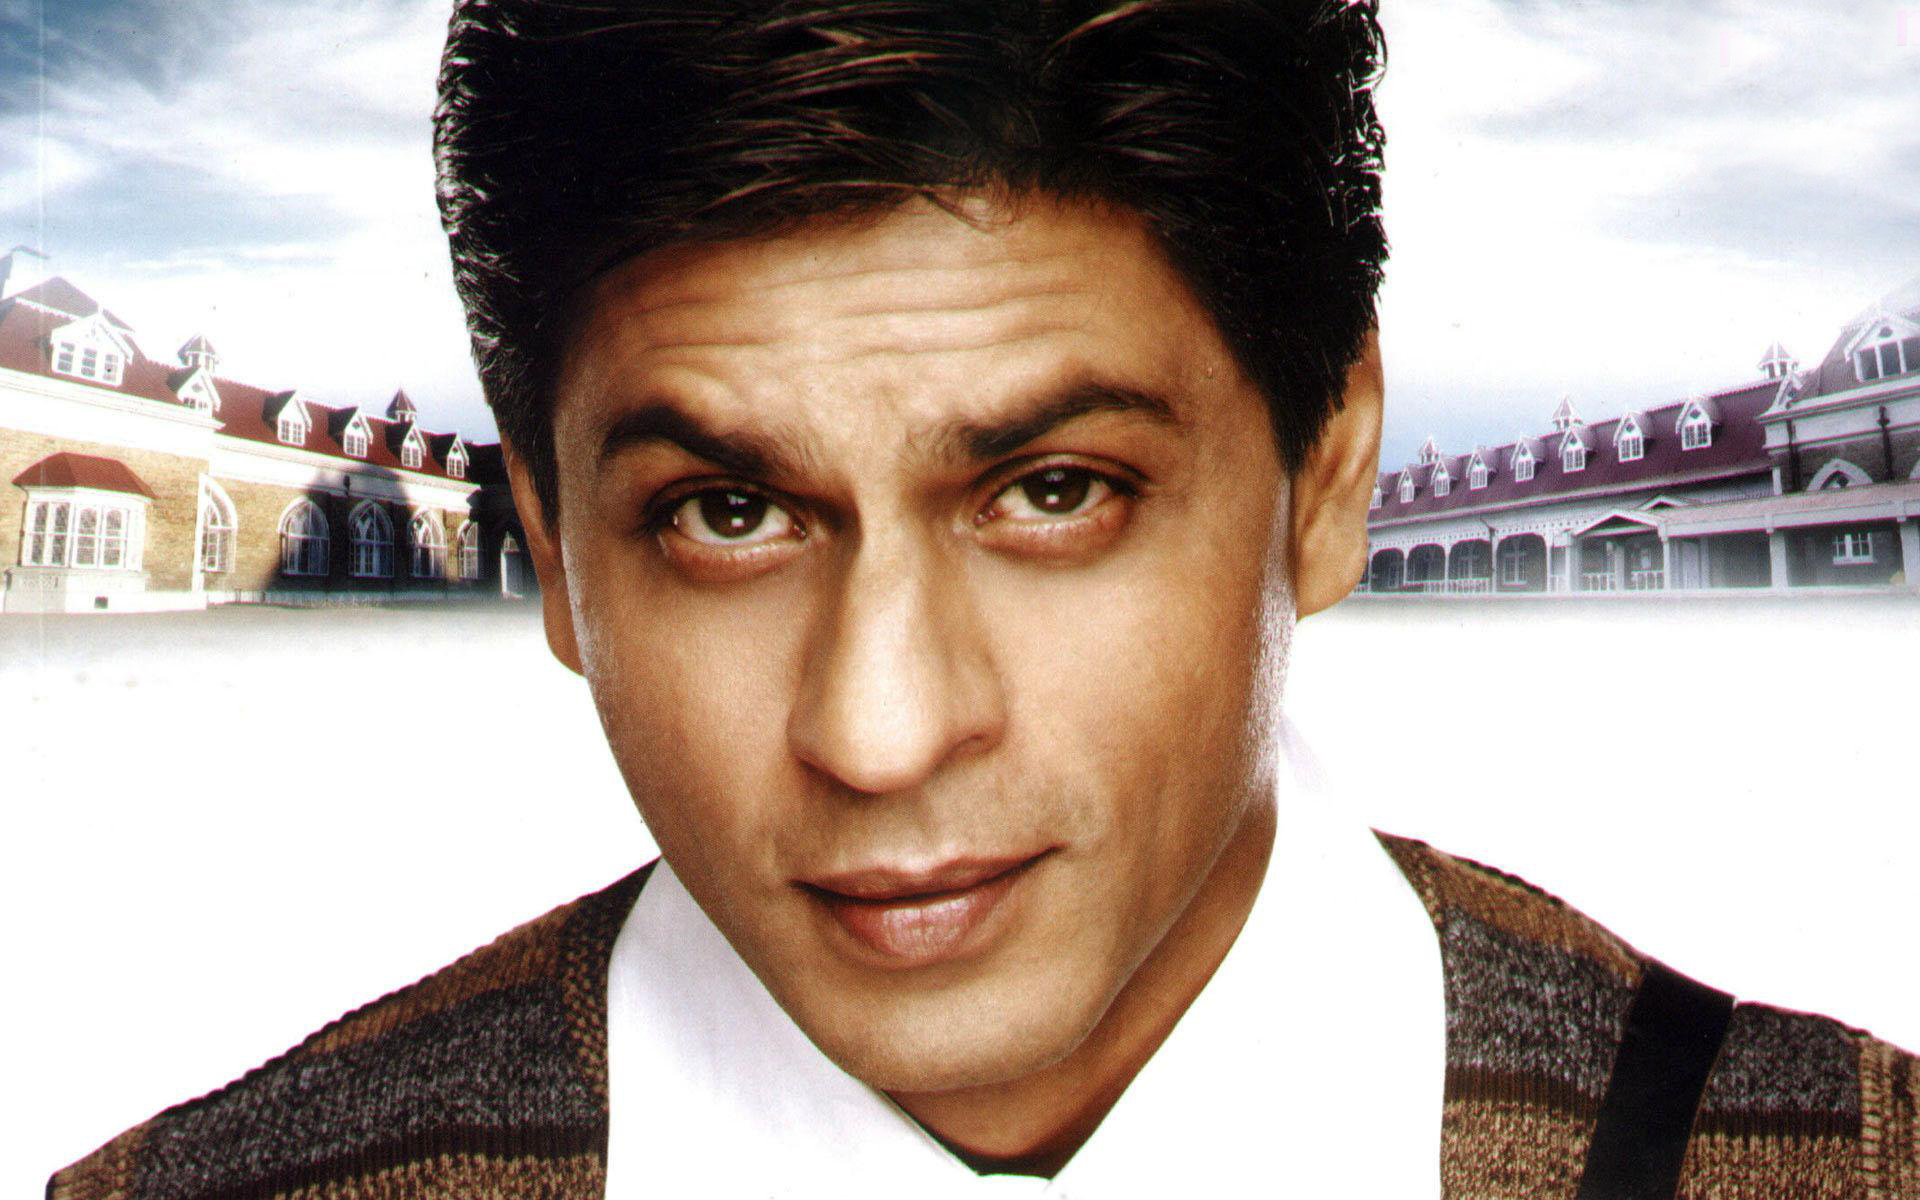 Is Shah Rukh Khan a billionaire?